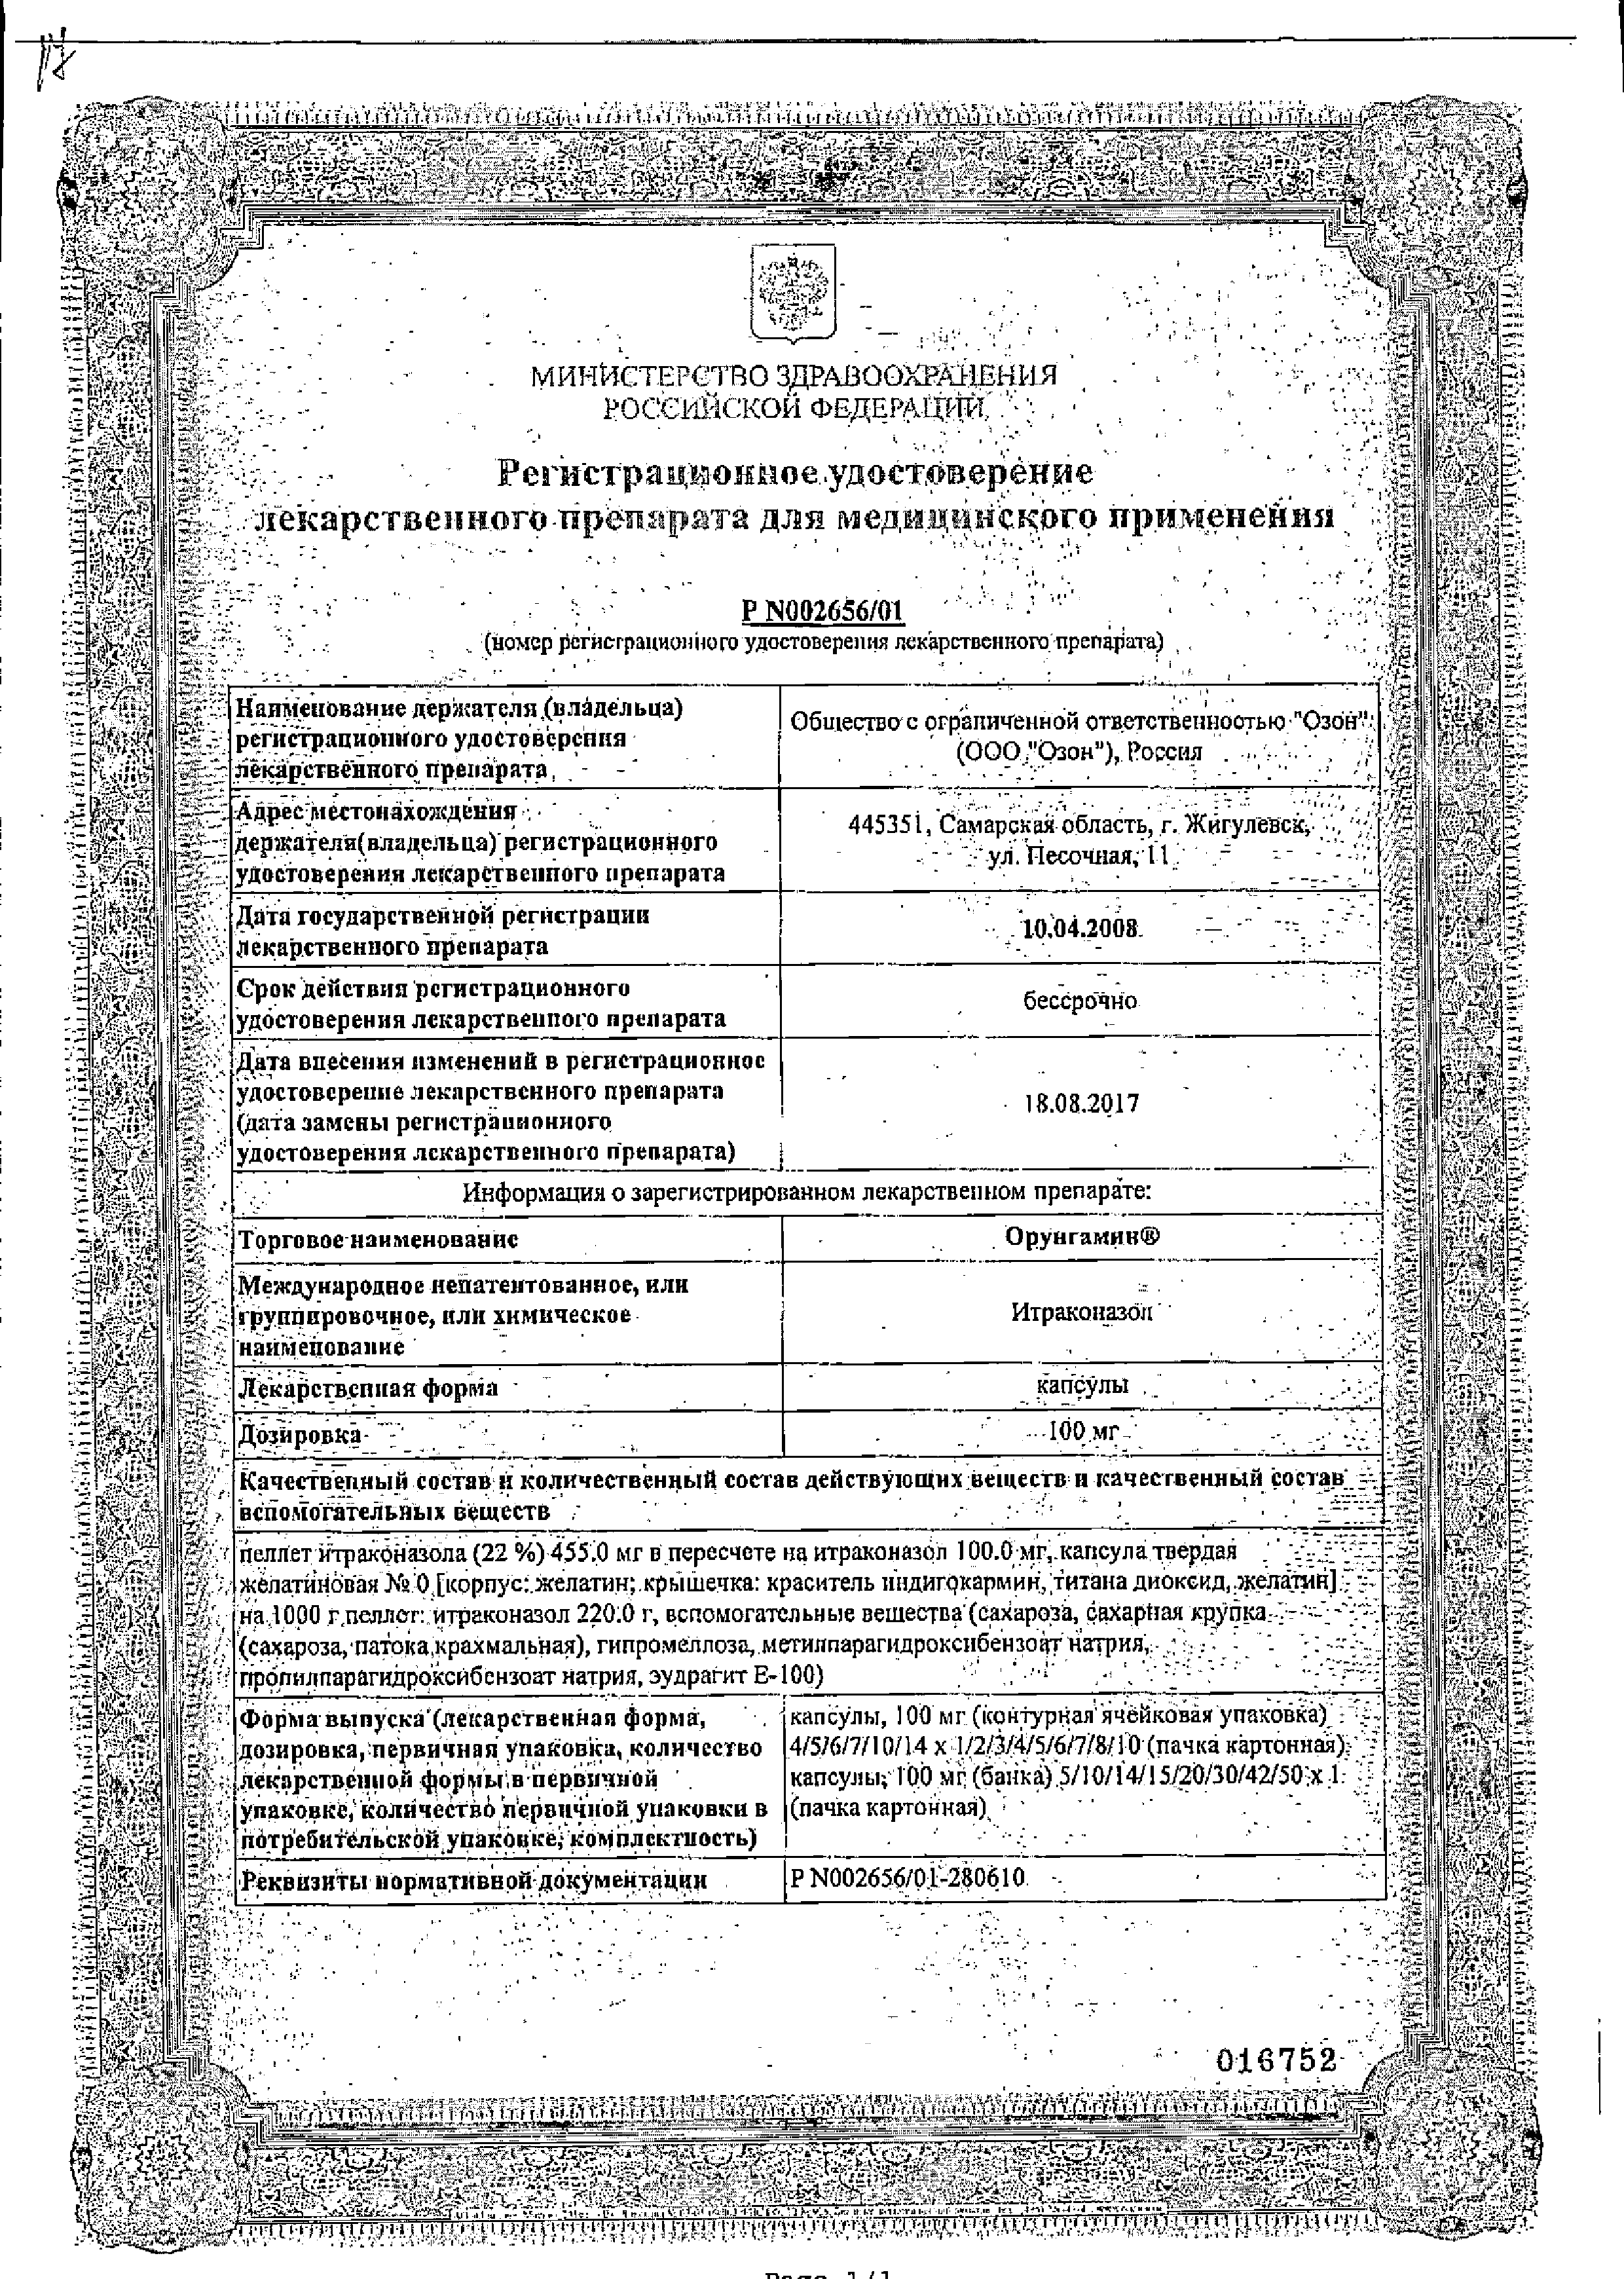 Орунгамин сертификат